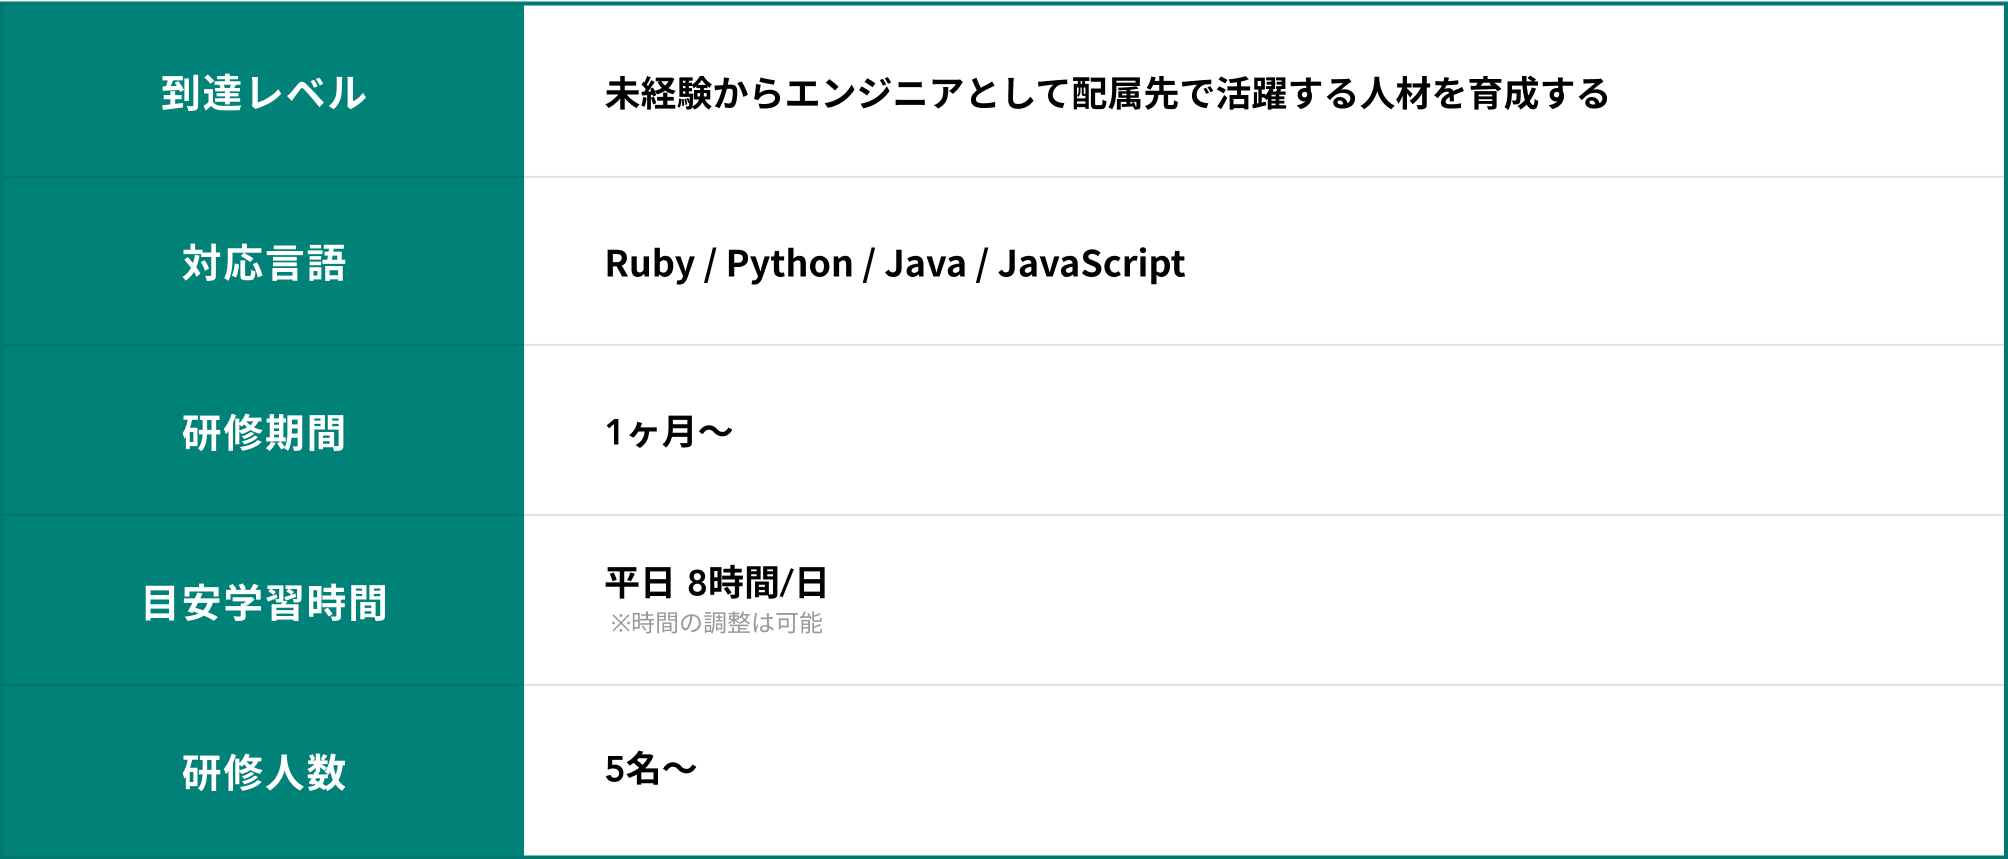 到達レベル：未経験からエンジニアとして配属先で活躍する人材を育成する/対応言語：Ruby / Python / Java / JavaScript/研修期間：1ヶ月〜/目安学習時間：平日 8時間/日(※時間の調整は可能)/研修人数：5名〜